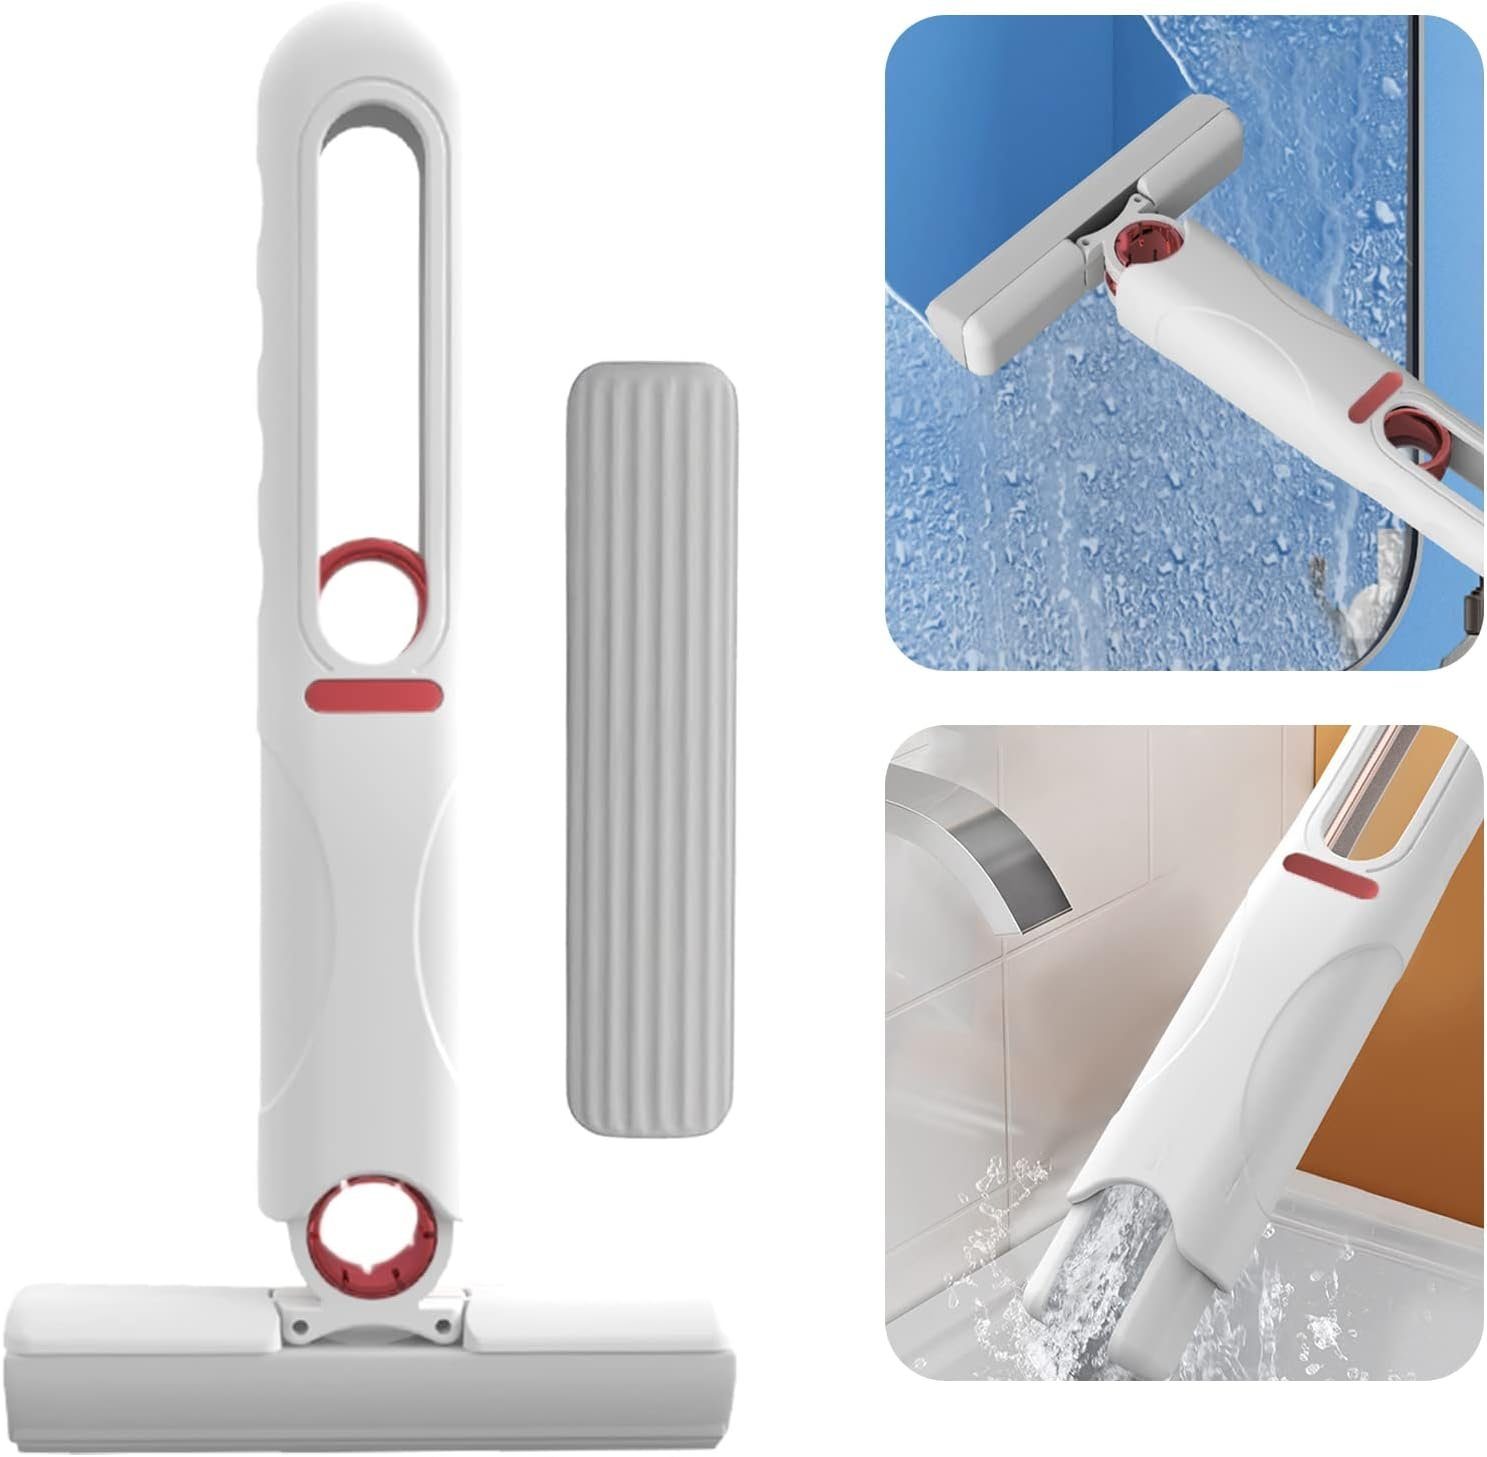 Wischmopp Mop, Moppkopf Desktop Mini-Mopp,Tragbar Wischmopp Selbstpressung Wasser Wischer Mop,mit Wasser Haiaveng 1